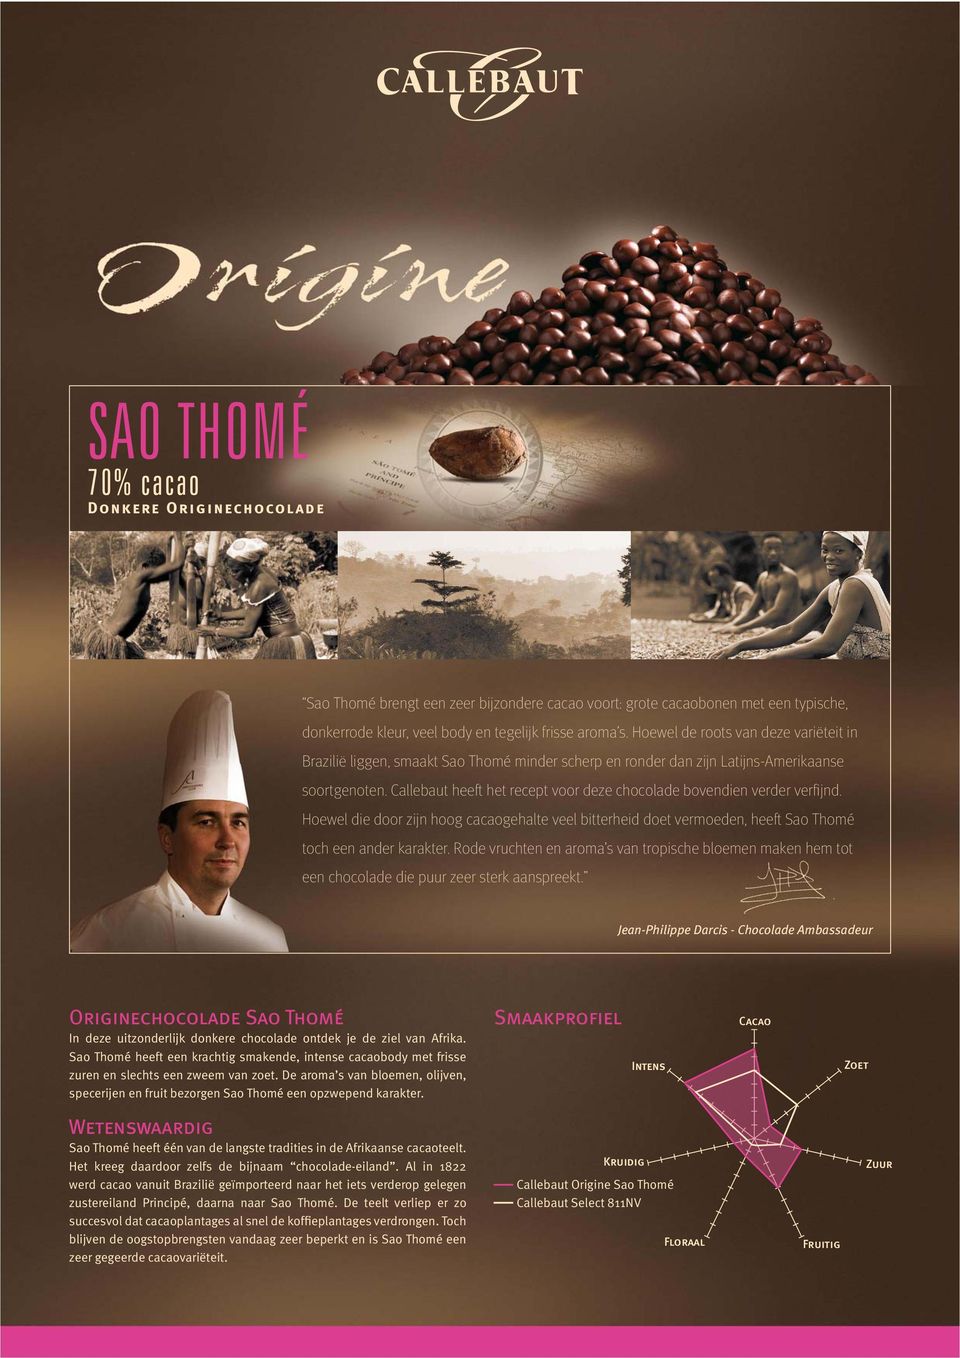 Callebaut heeft het recept voor deze chocolade bovendien verder verfi jnd. Hoewel die door zijn hoog cacaogehalte veel bitterheid doet vermoeden, heeft Sao Thomé toch een ander karakter.